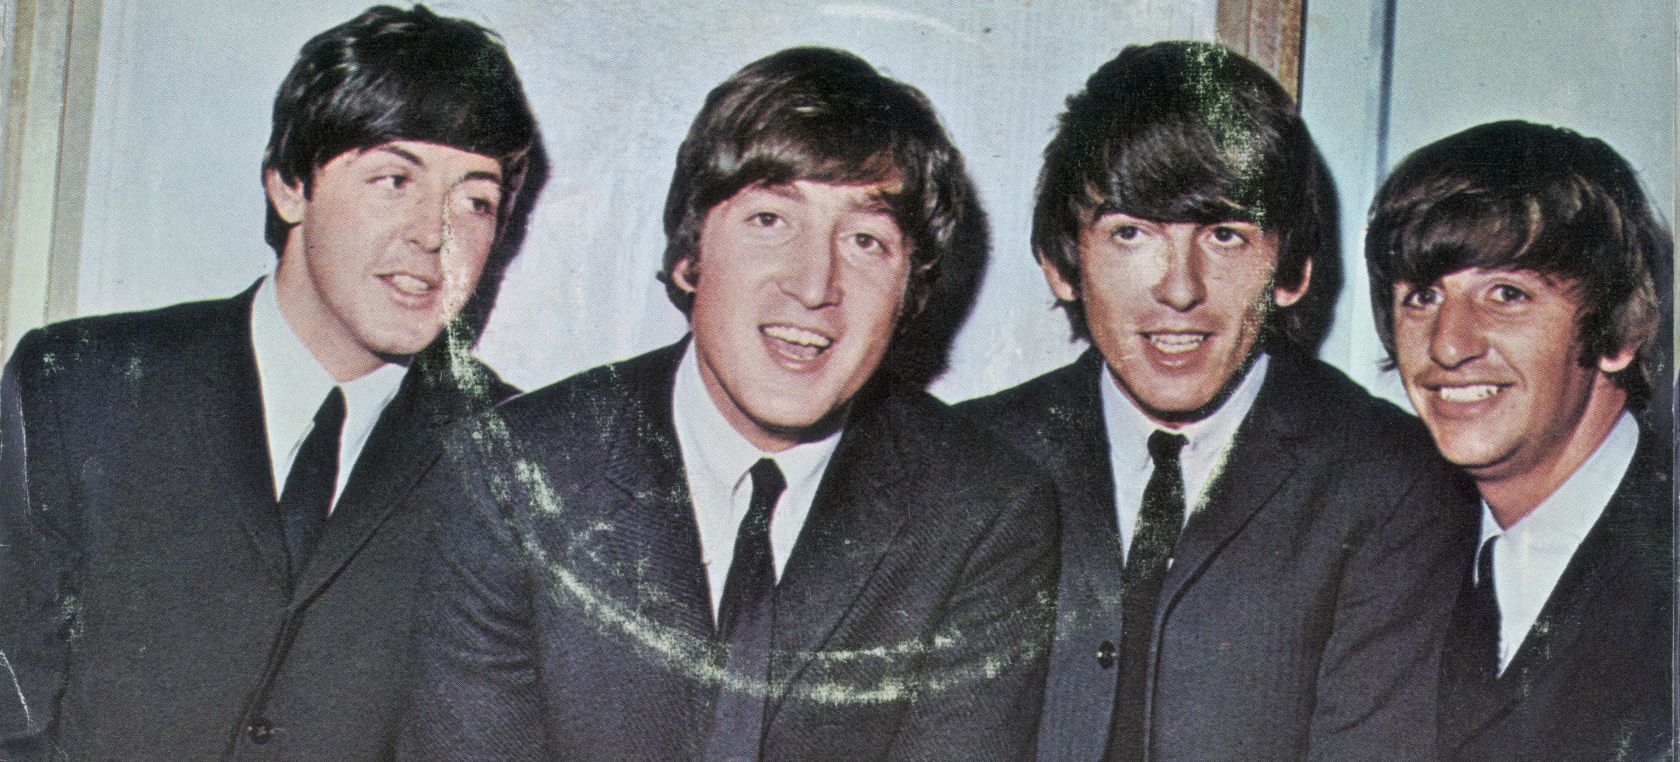 Historia de la 'portada del carnicero' de The Beatles: “¿Qué demonios es  esto?” | LOS40 Classic | LOS40